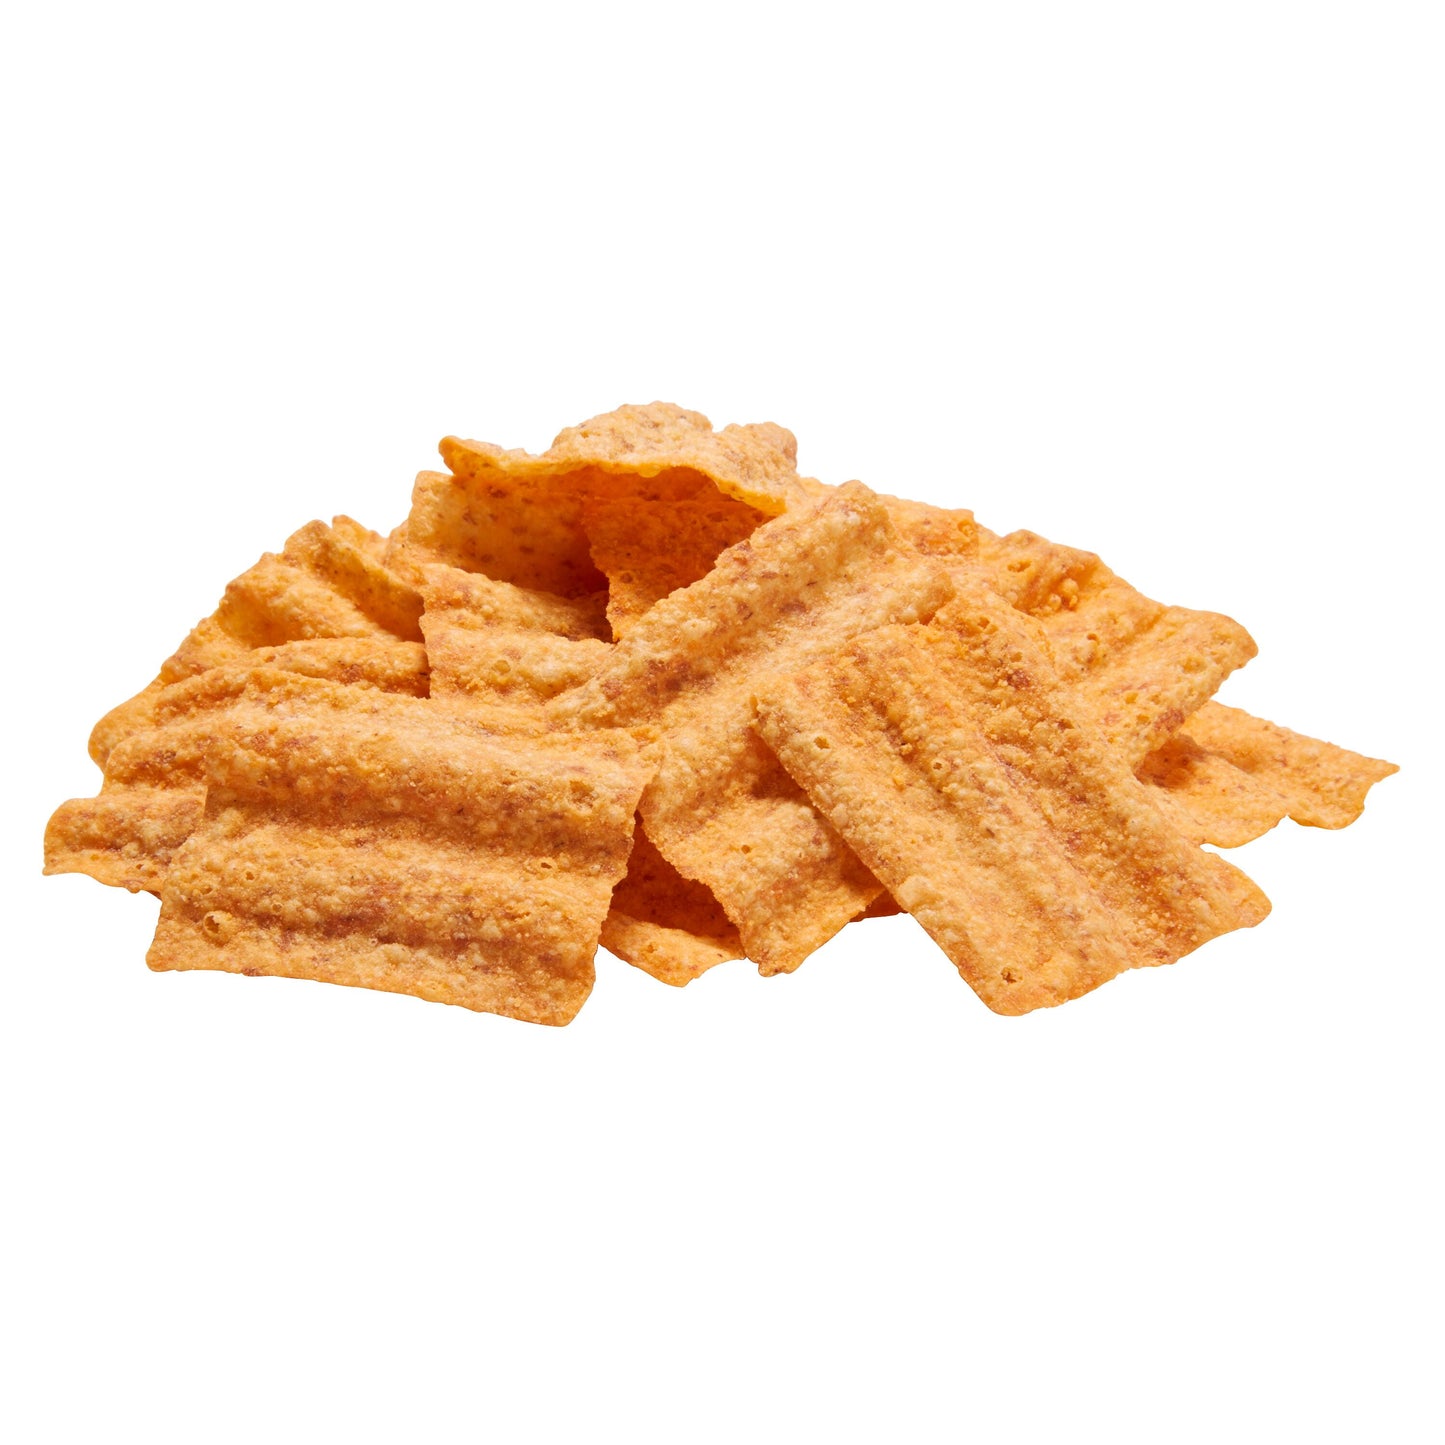 SunChips Harvest Cheddar Flavored Whole Grain Snack Chips, 2.75 oz Bag